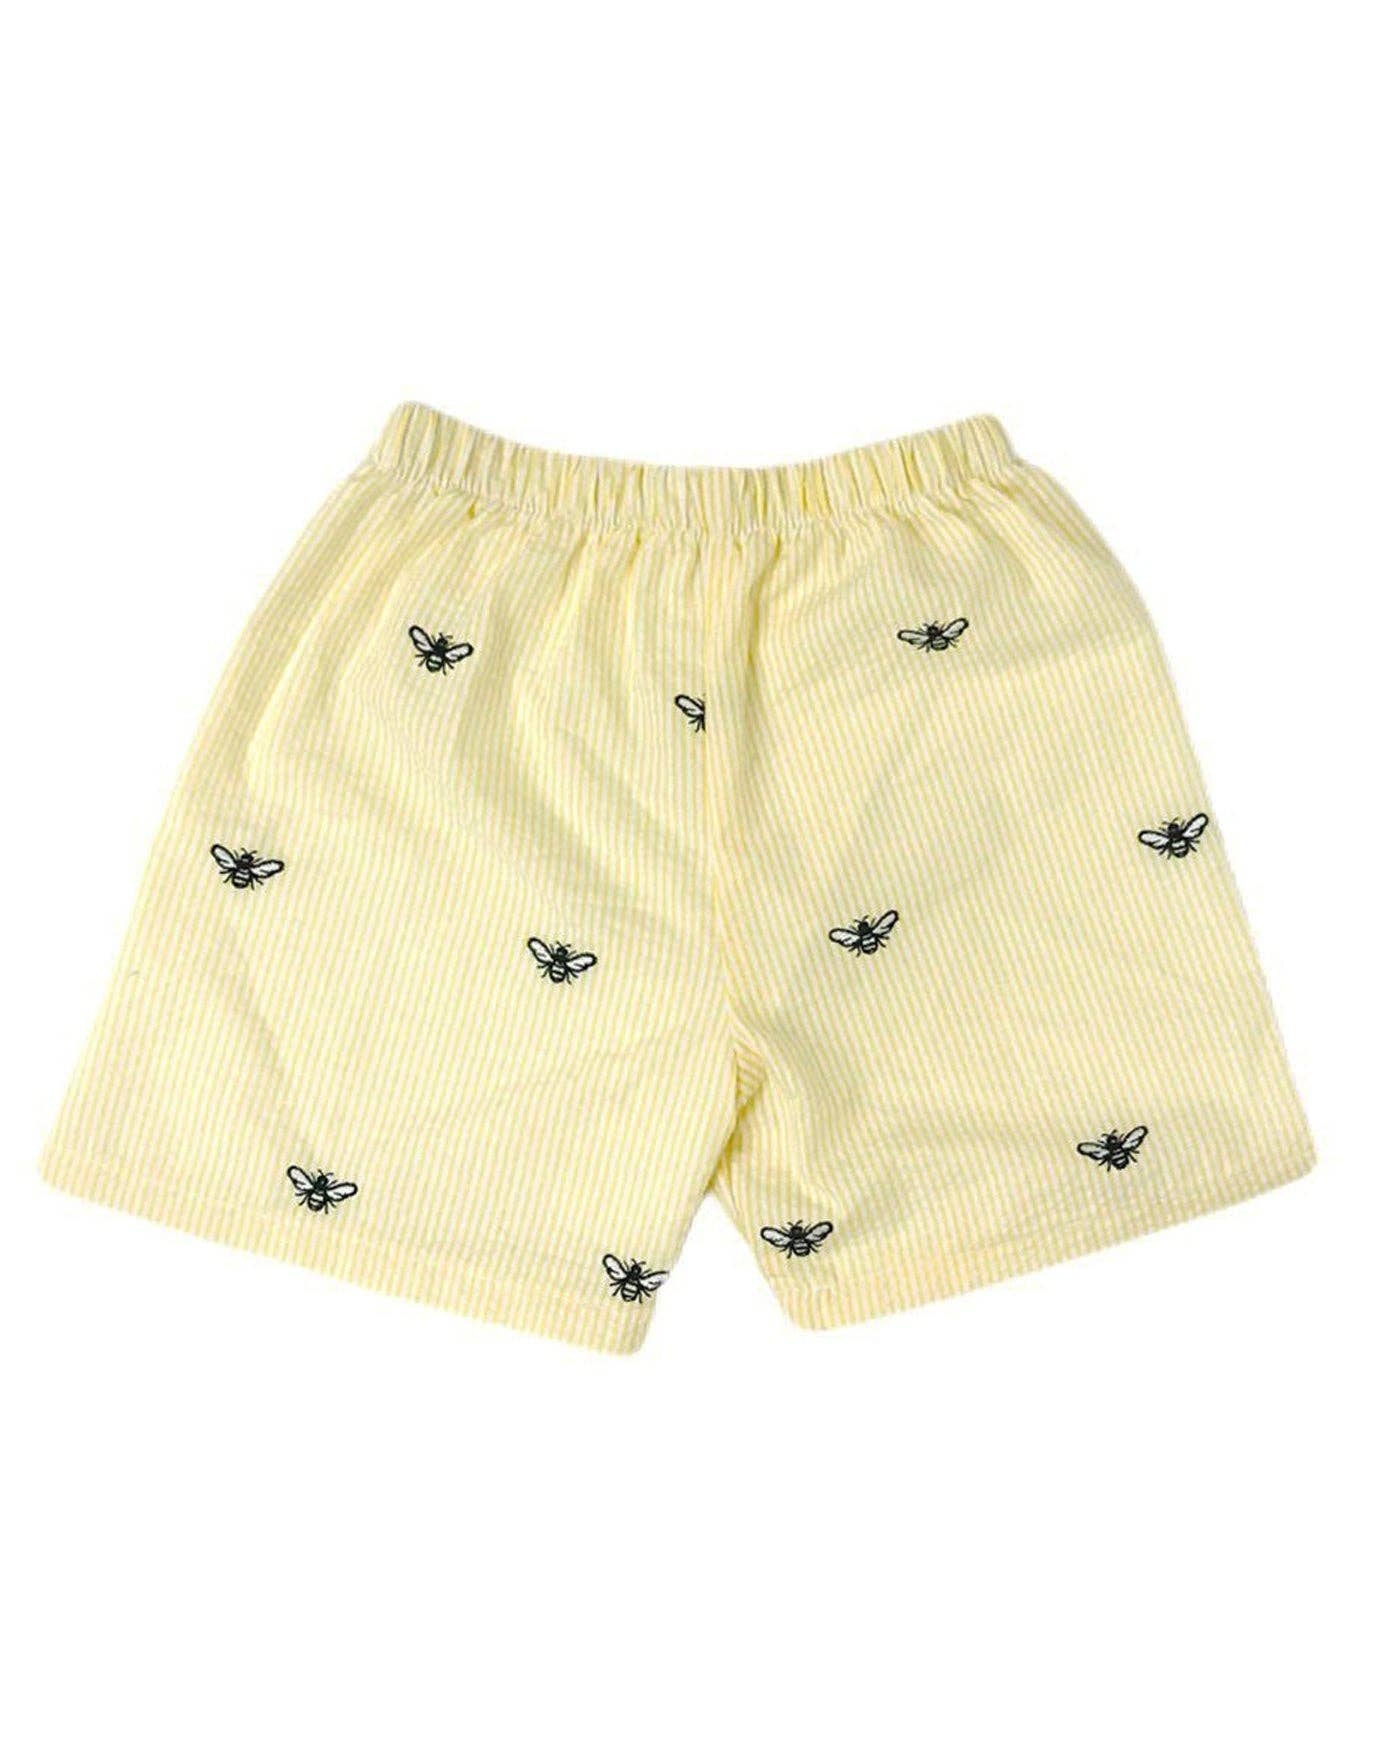 Yellow Honeybees Shorts